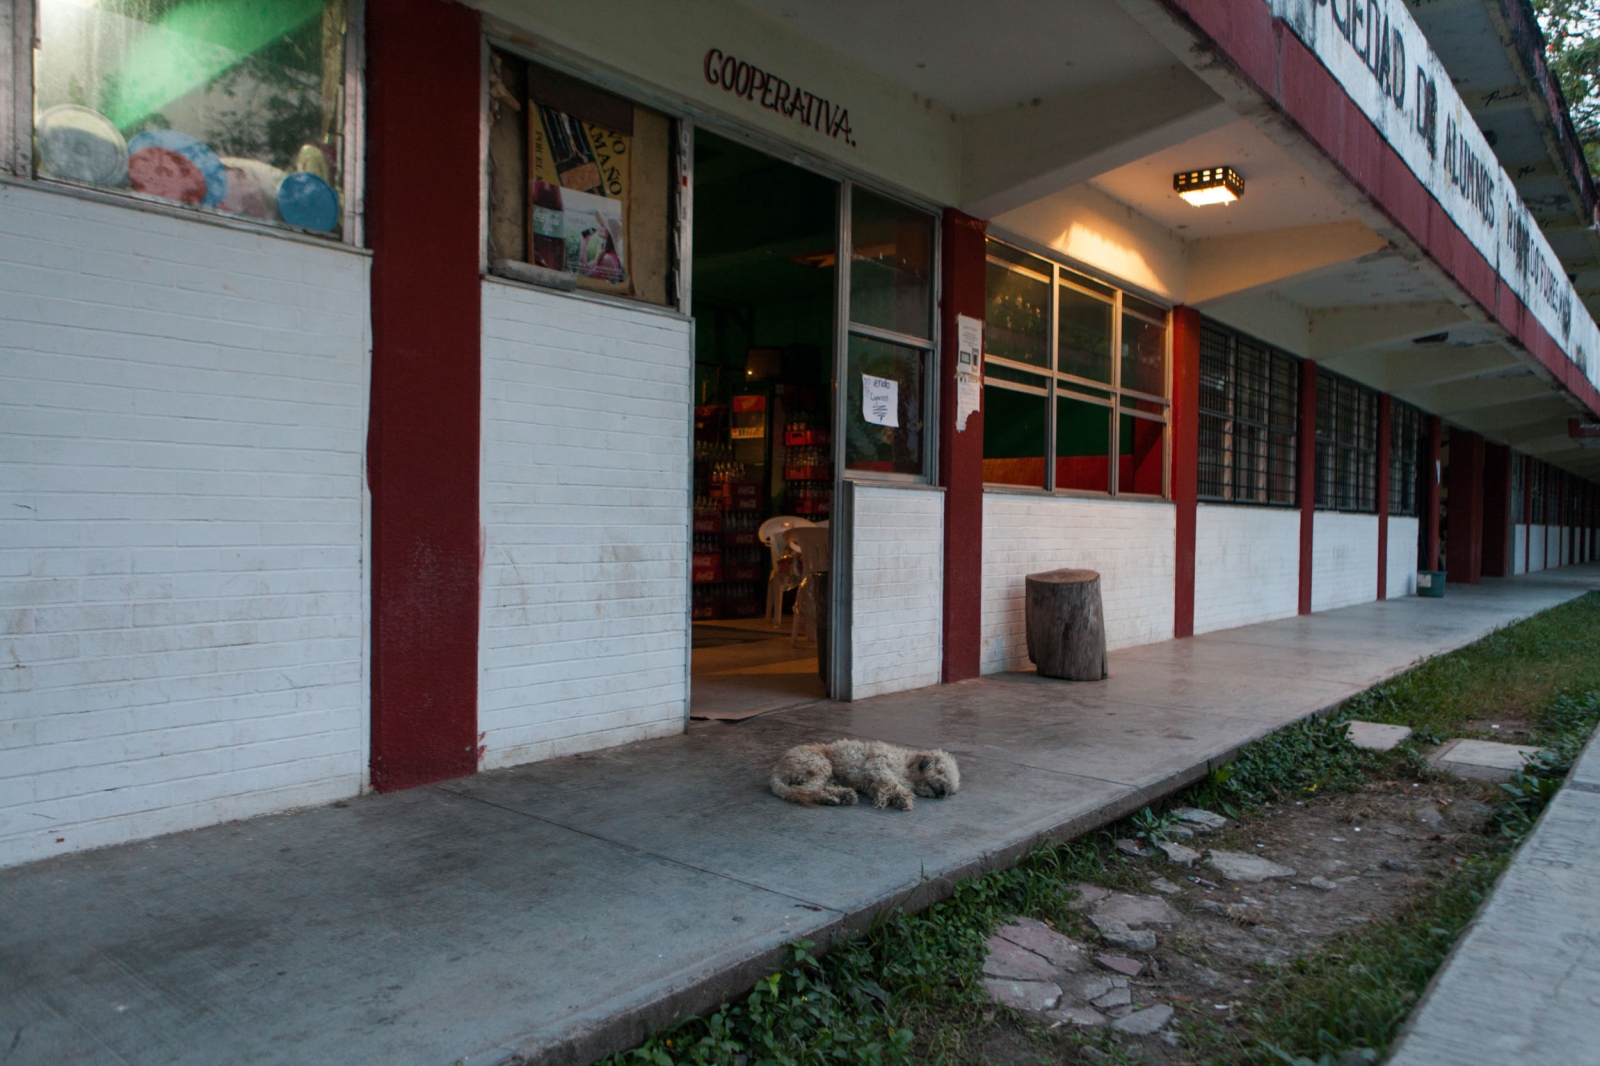  The school cooperative shop at dusk, where certain goods are sold.Â //Â La cooperativa de la escuela en el atardecer, adonde ciertos productos son vendidos.Â 